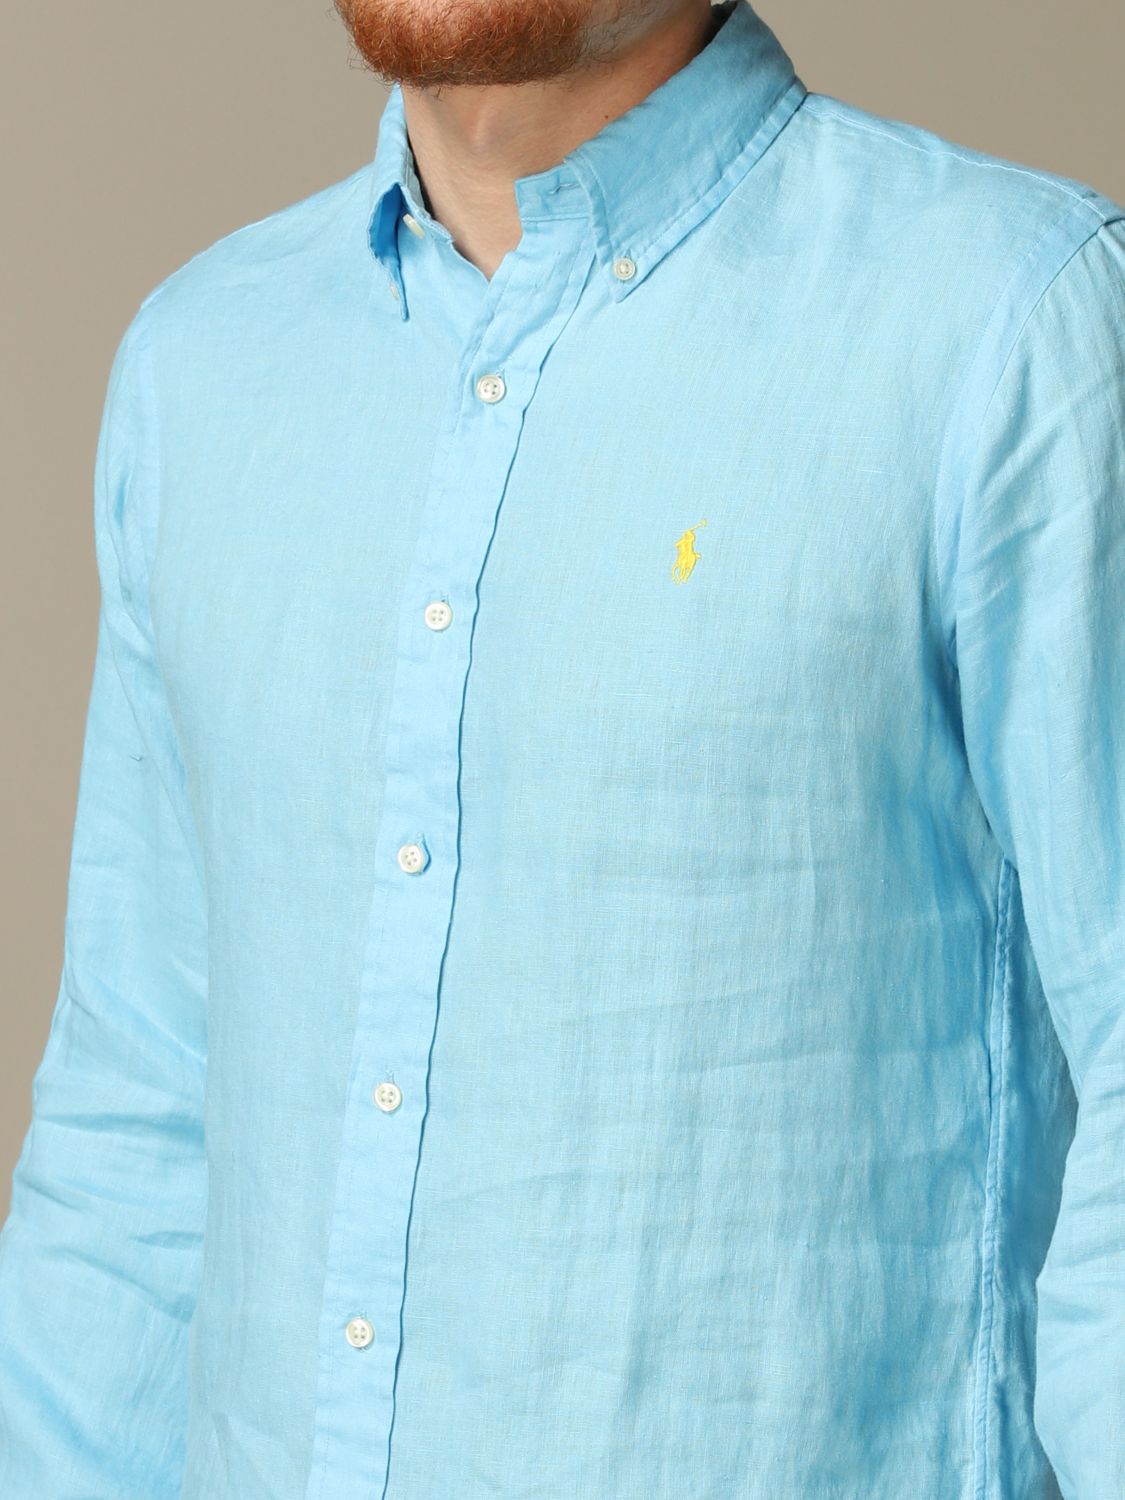 ralph lauren sky blue shirt